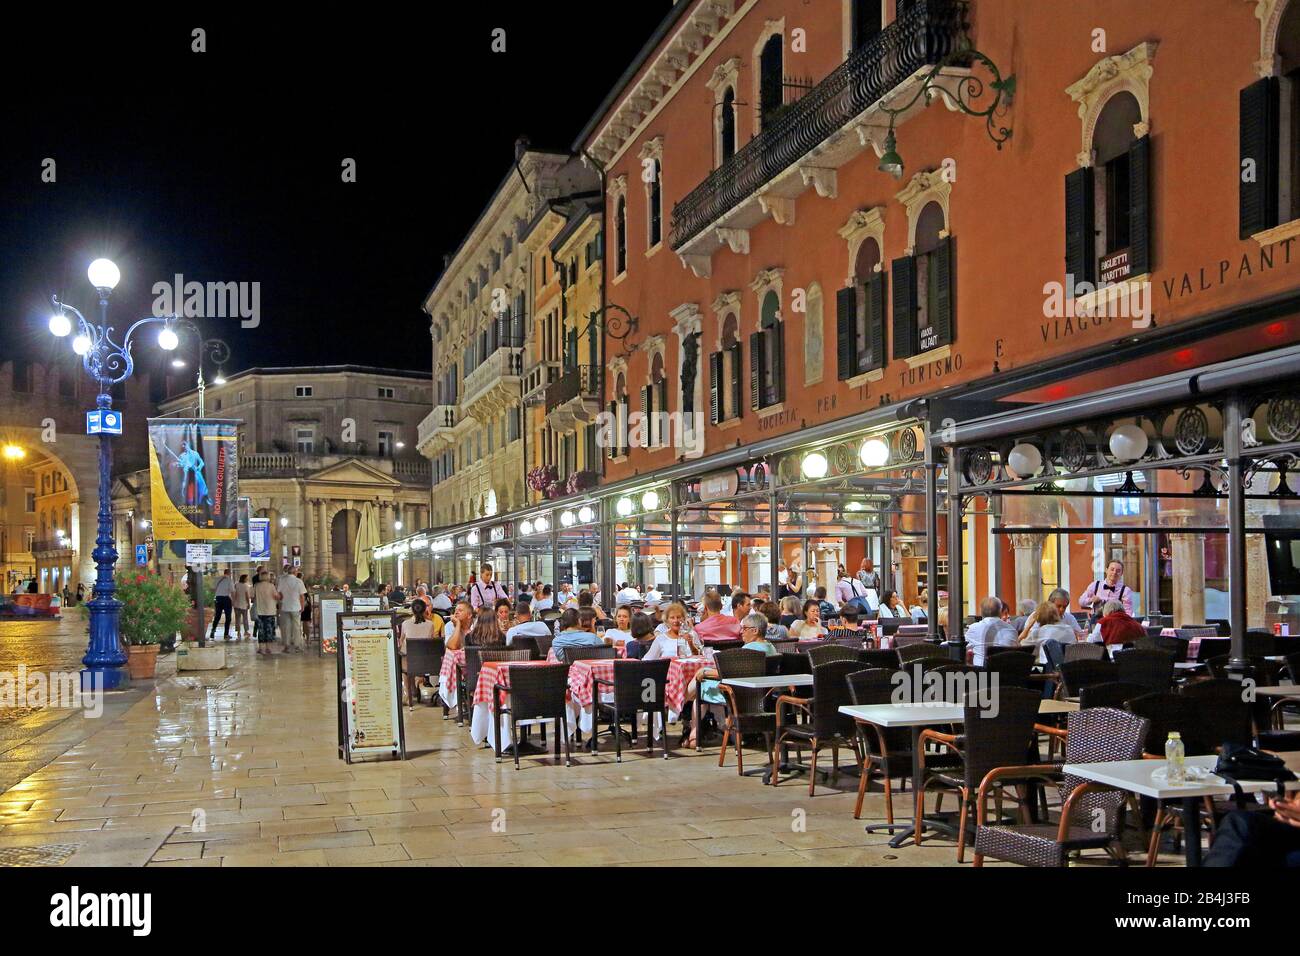 Palazzi en Piazza Bra con terrazas restaurante por la noche, casco antiguo, Verona, Veneto, Italia Foto de stock